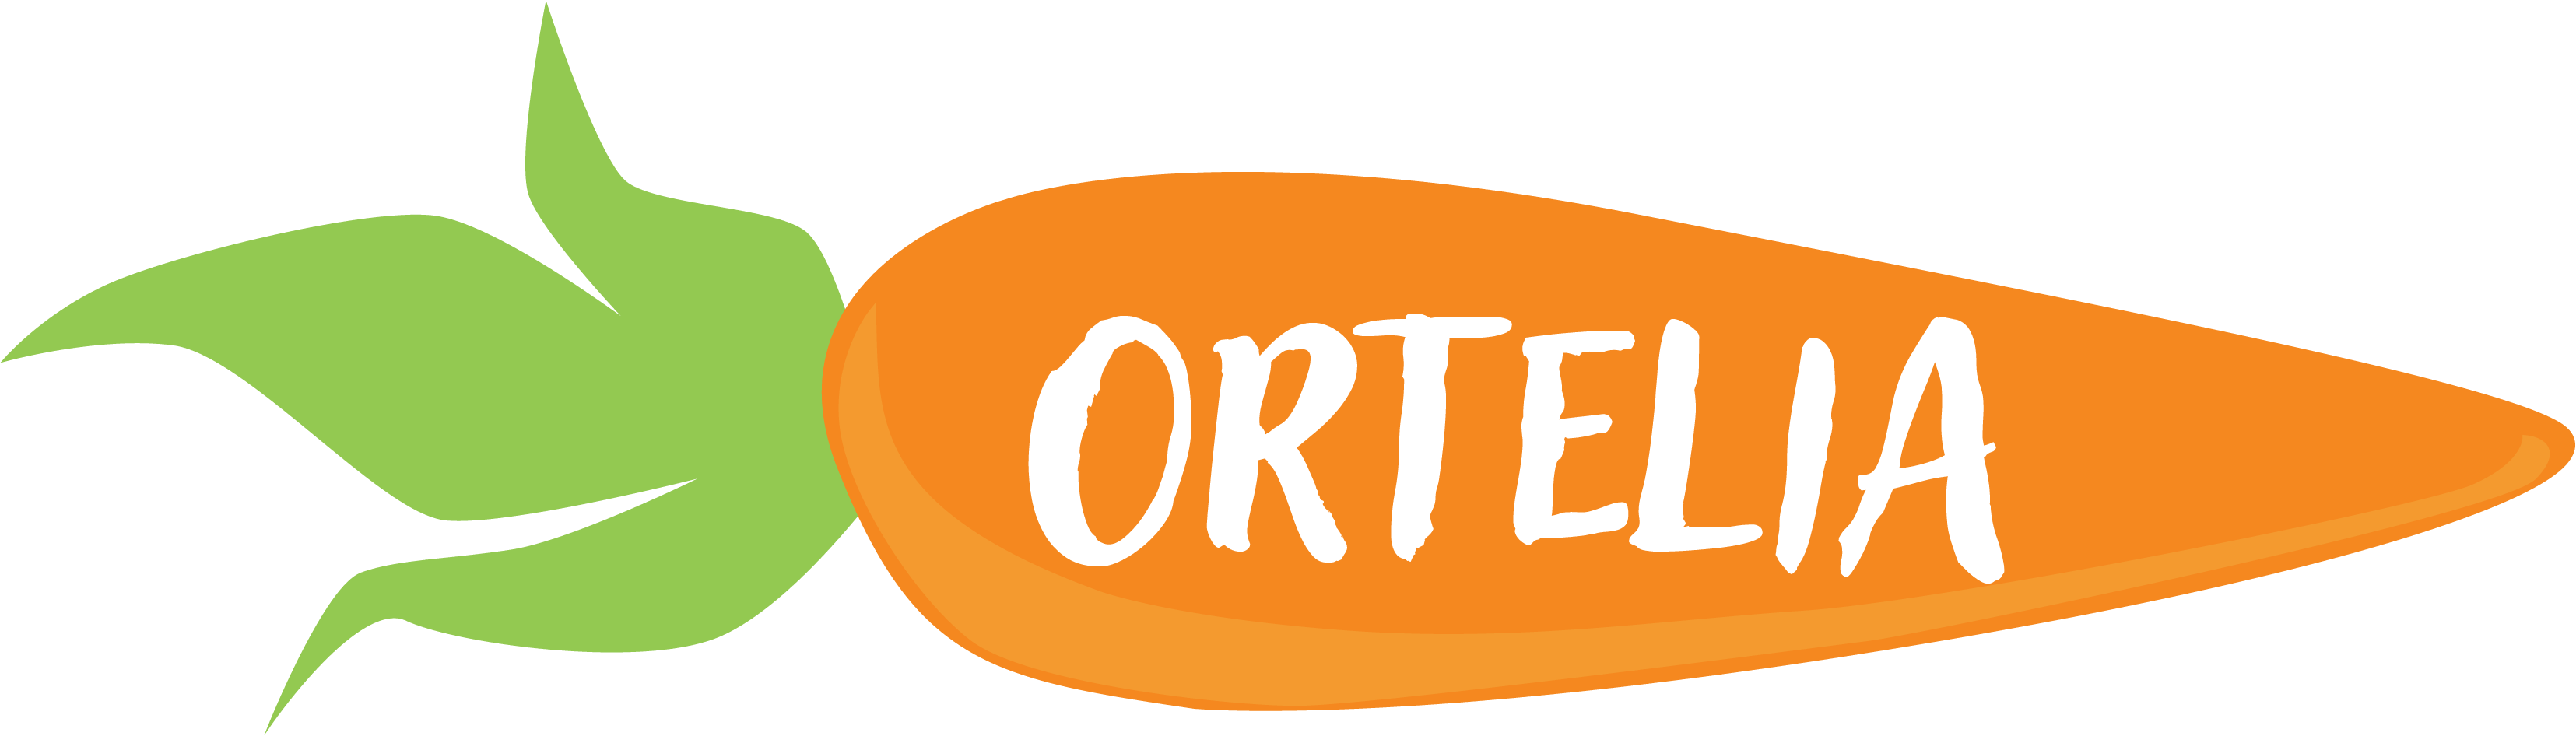 Ortelia